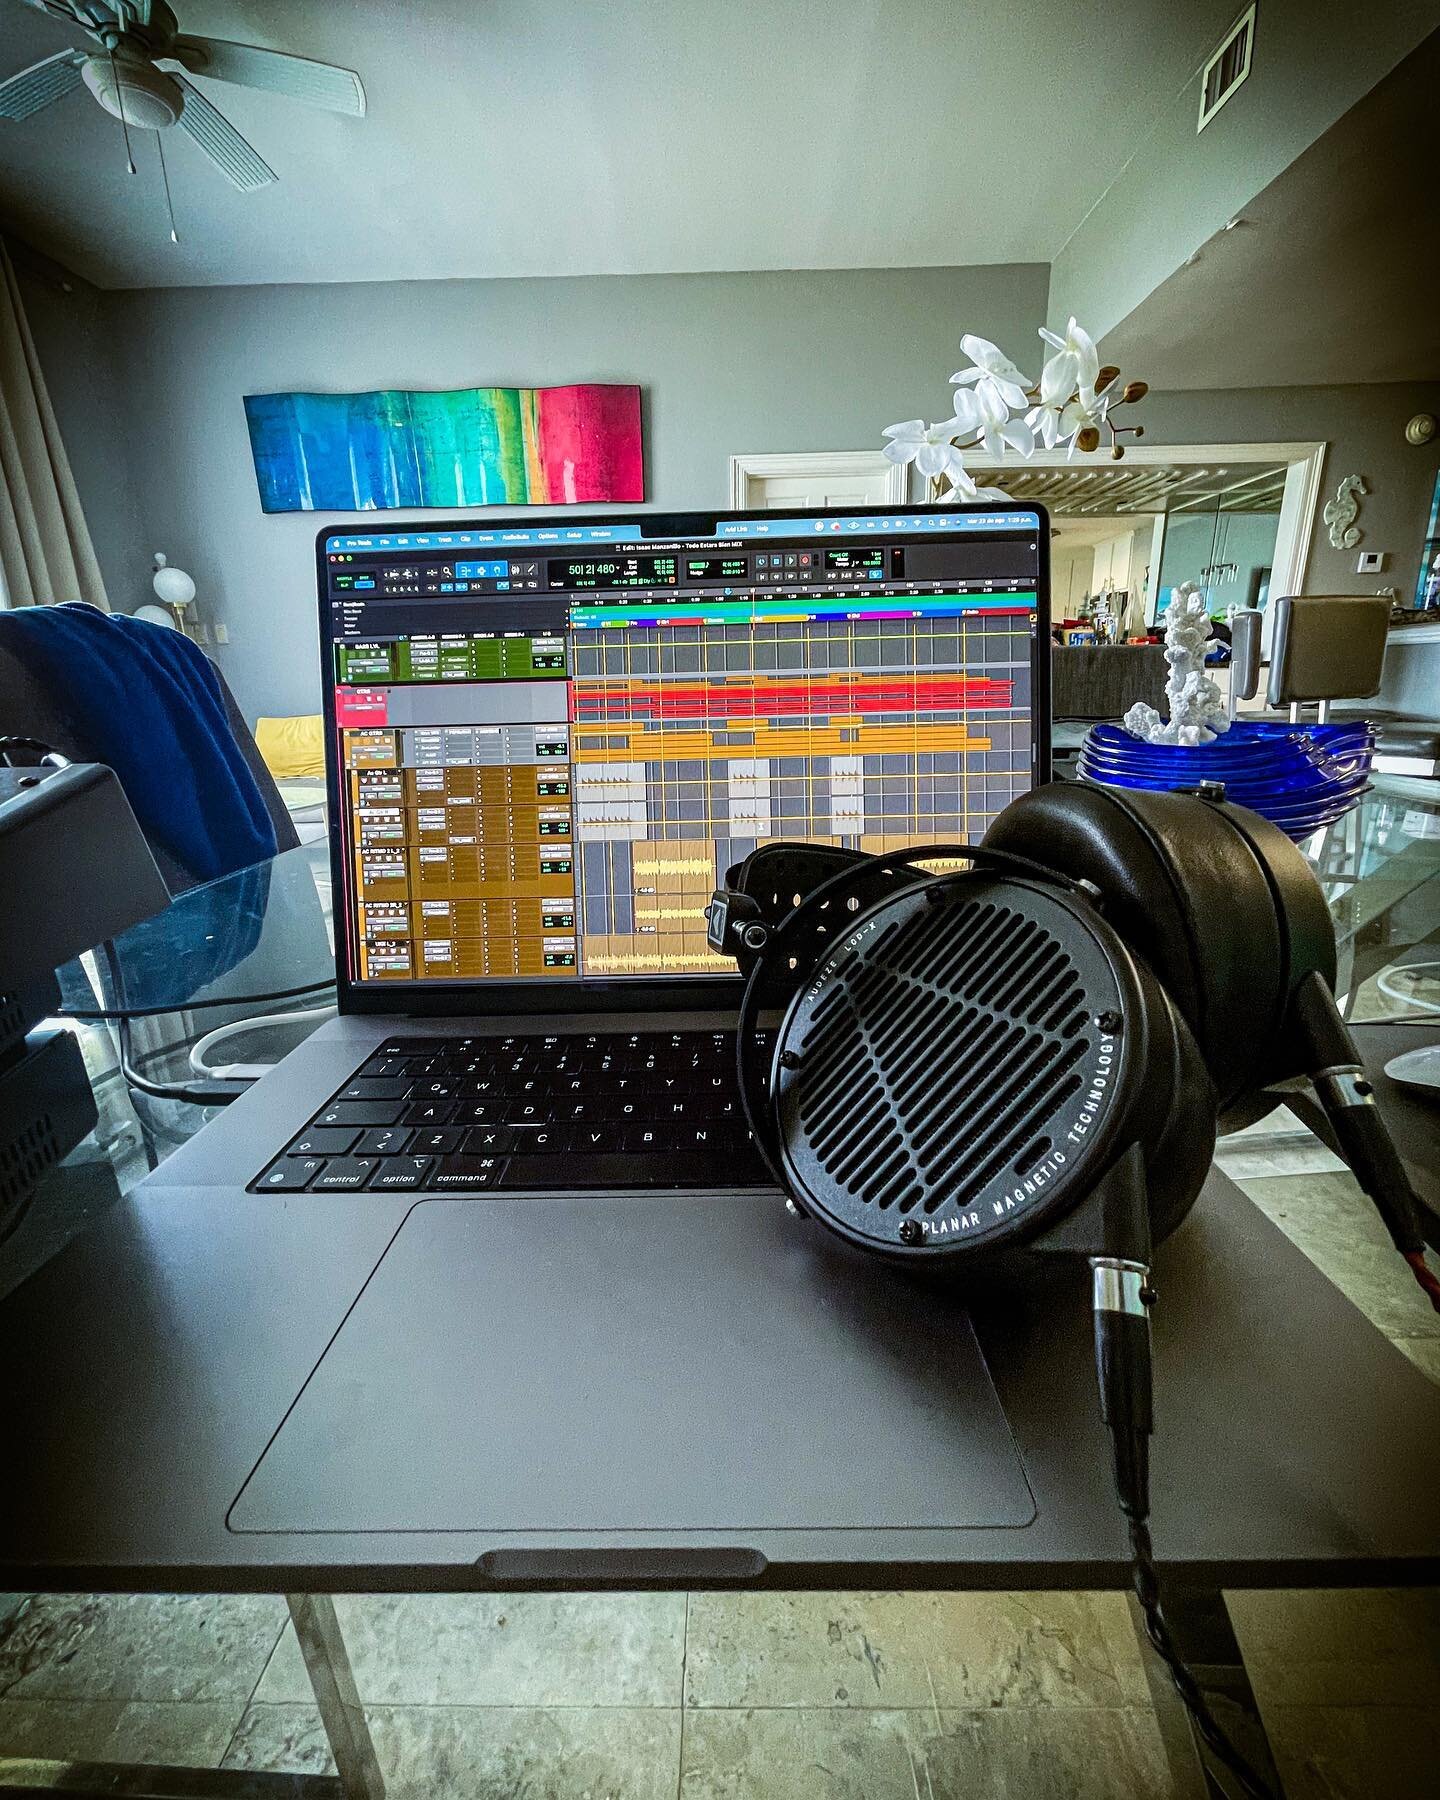 Remote mixing en la playita con mis nuevos confiables Audeze LCD-X 🎧. Creo que me esta gustando mucho esto de mezclar fuera del estudio jaja 😜 

.
.
.
.
.
.
#producerlife #recordingengineer #musicproducer #recordingstudio #recording #mixing #music 